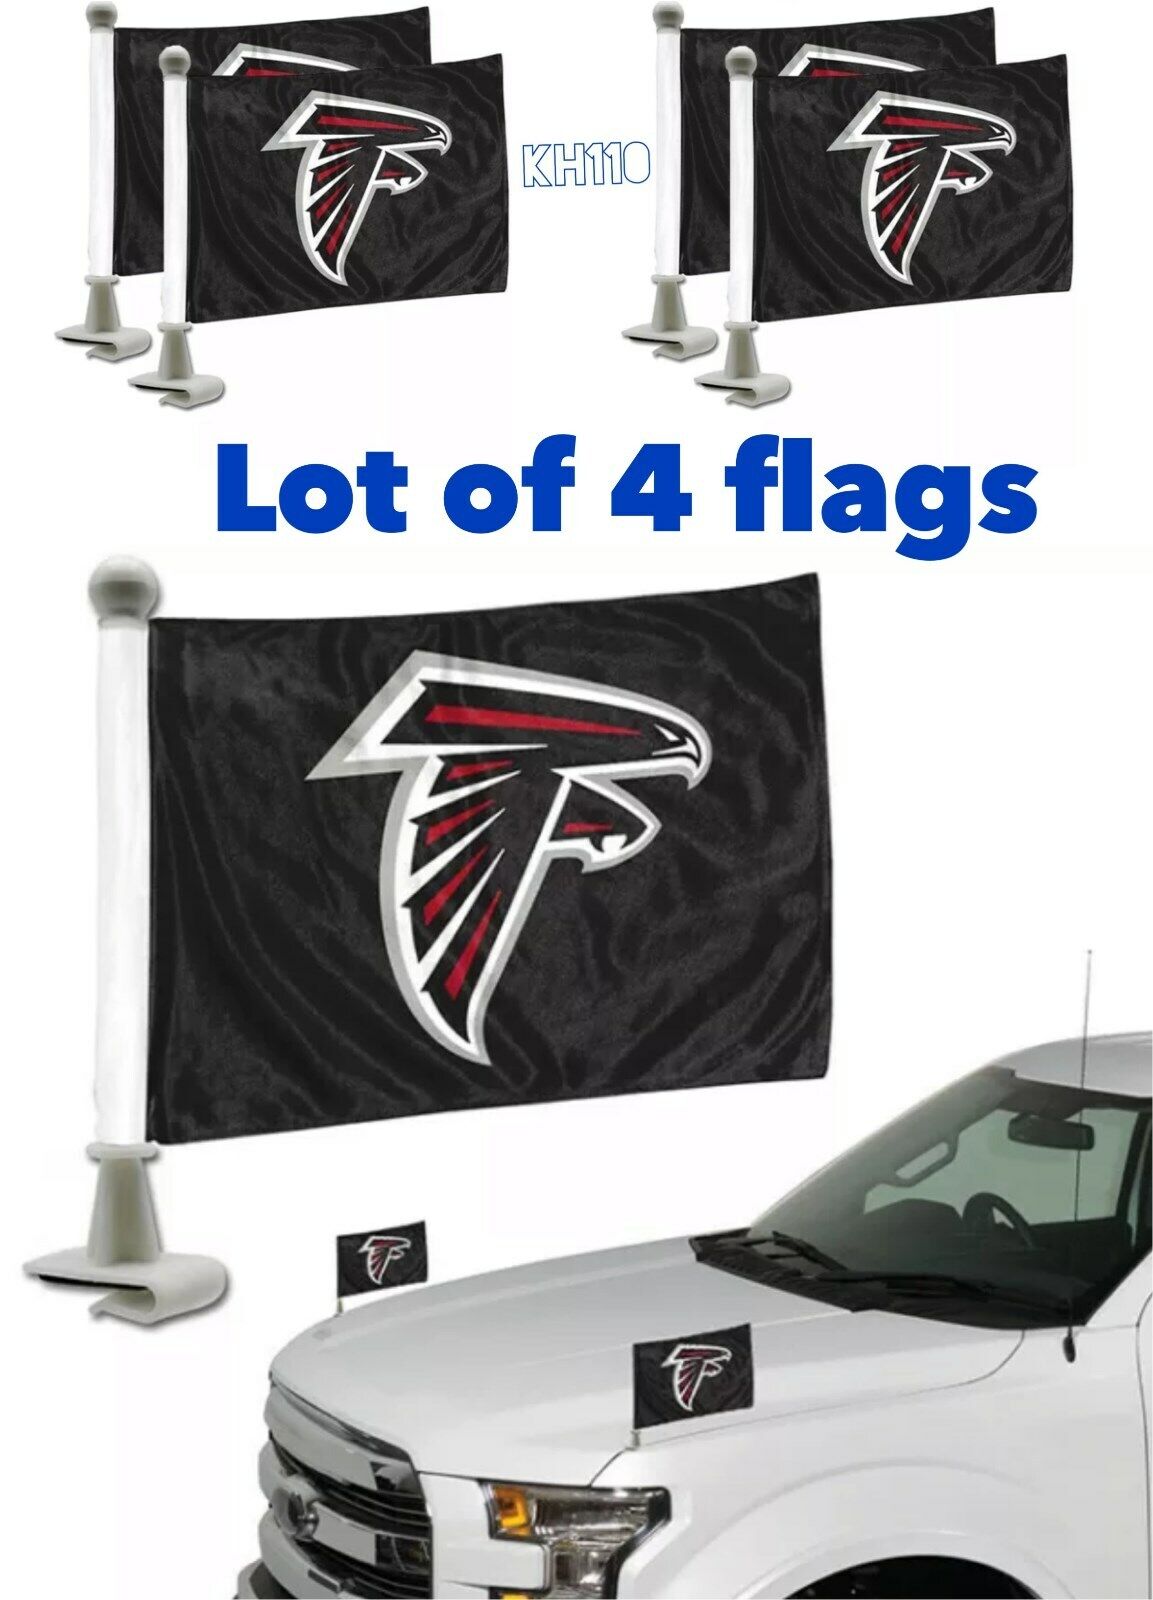  NFL Atlanta Falcons Car Hood / Trunk Ambassador Flags -Lot Of 4pcs 